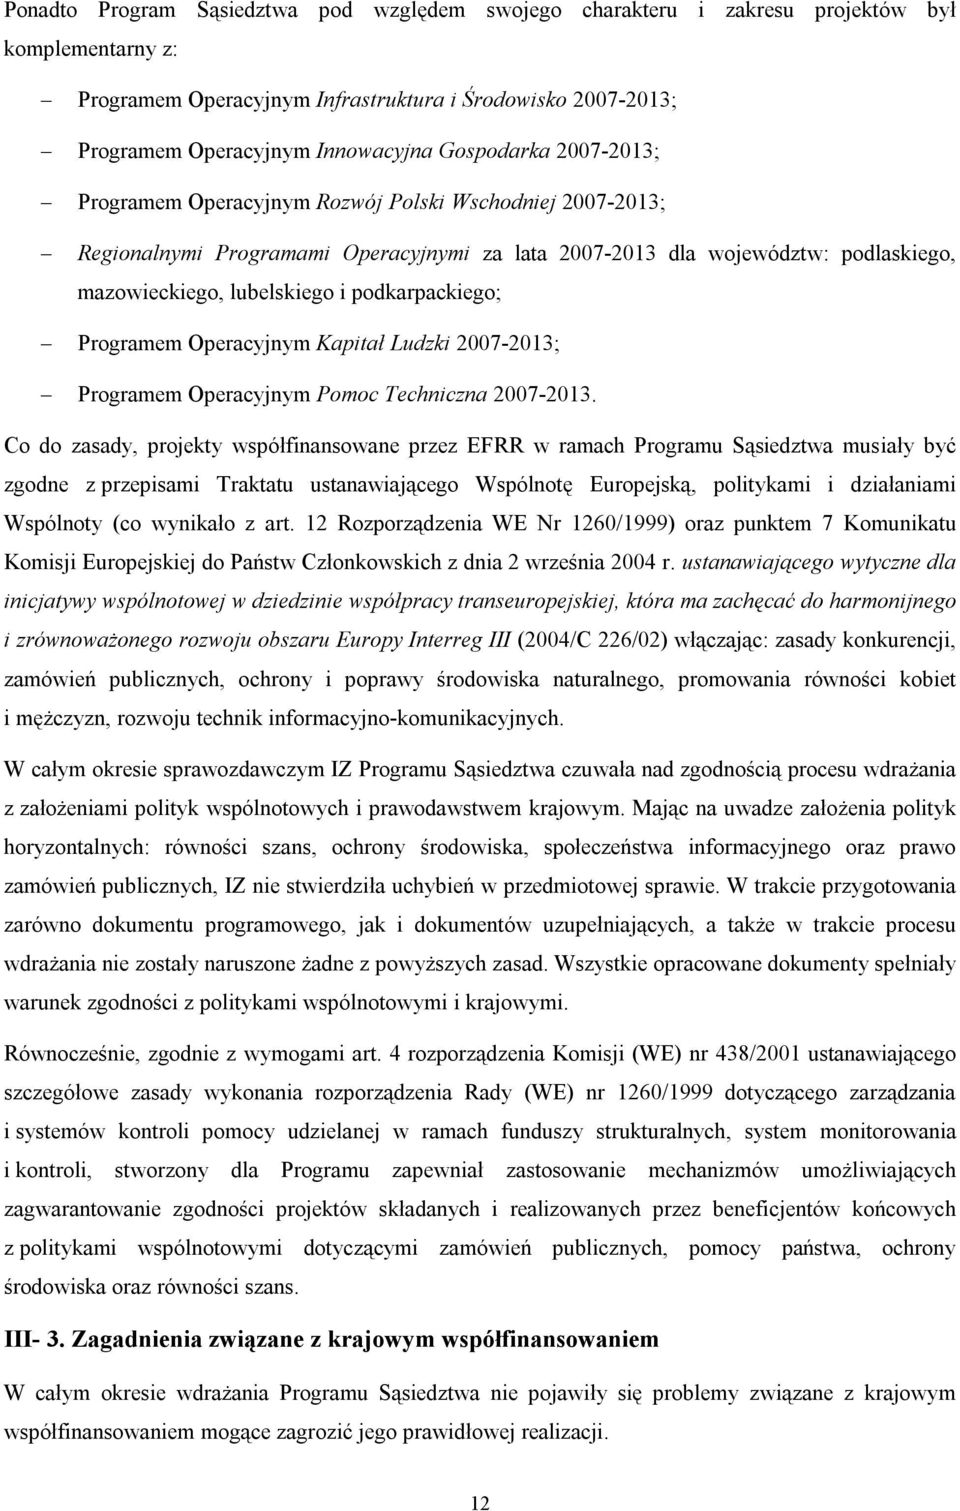 podkarpackiego; Programem Operacyjnym Kapitał Ludzki 2007-2013; Programem Operacyjnym Pomoc Techniczna 2007-2013.